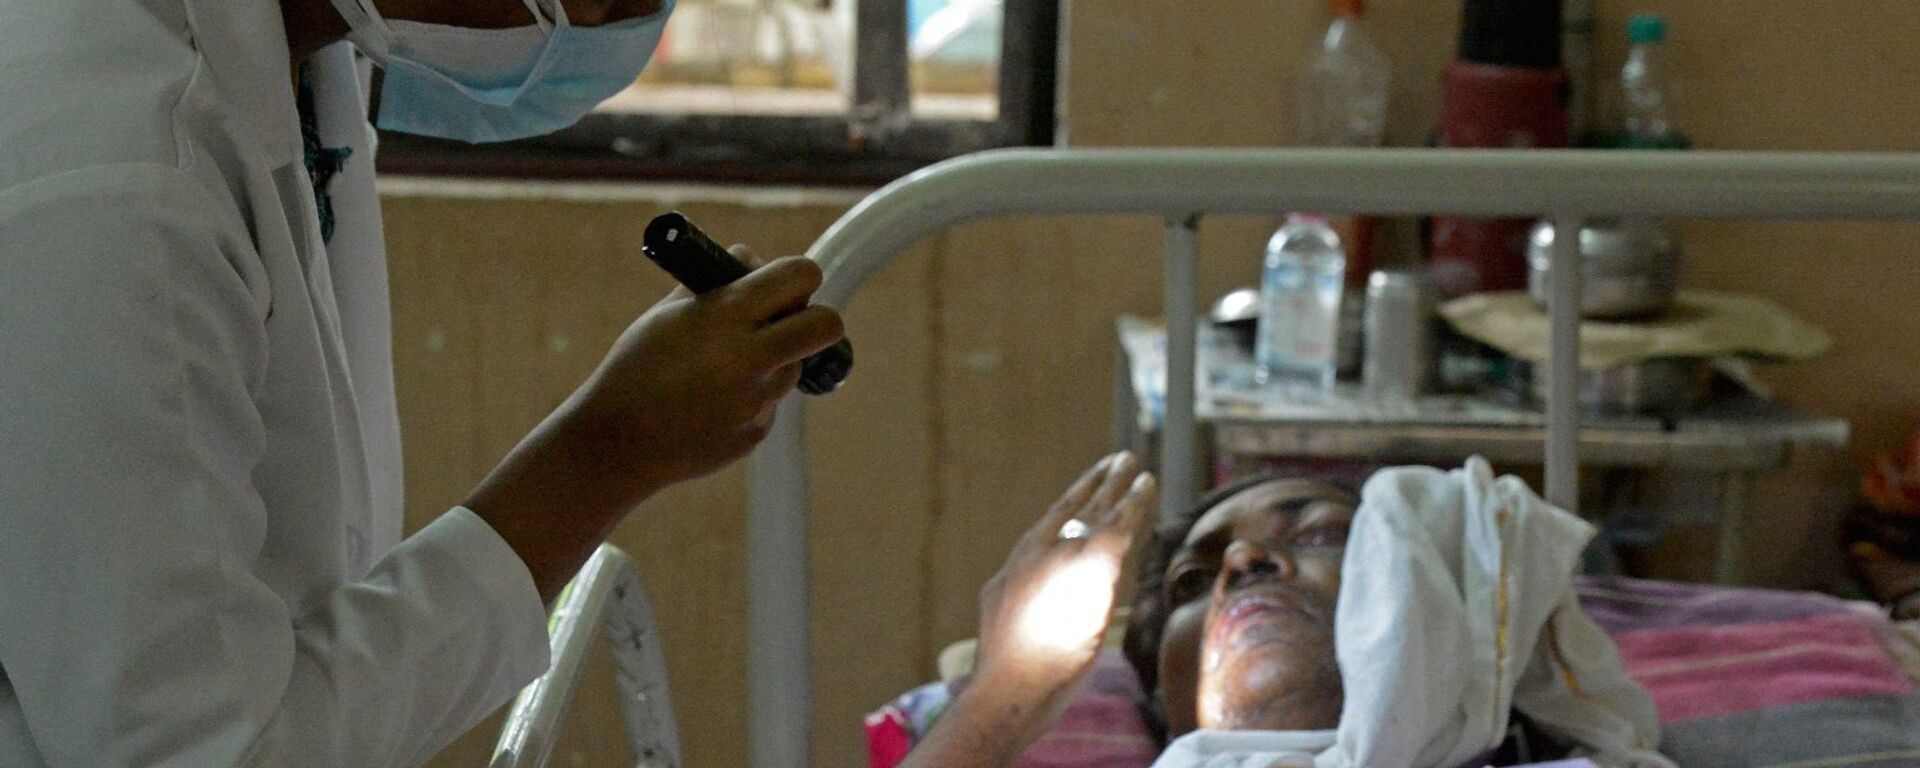 طبيب يفحص مريضا تعافى من فيروس كورونا المستجد وأصيب الآن بالفطر الأسود في جناح بمستشفى حكومي في حيدر أباد، الهند، 21 مايو/ أيار 2021. - سبوتنيك عربي, 1920, 24.05.2021